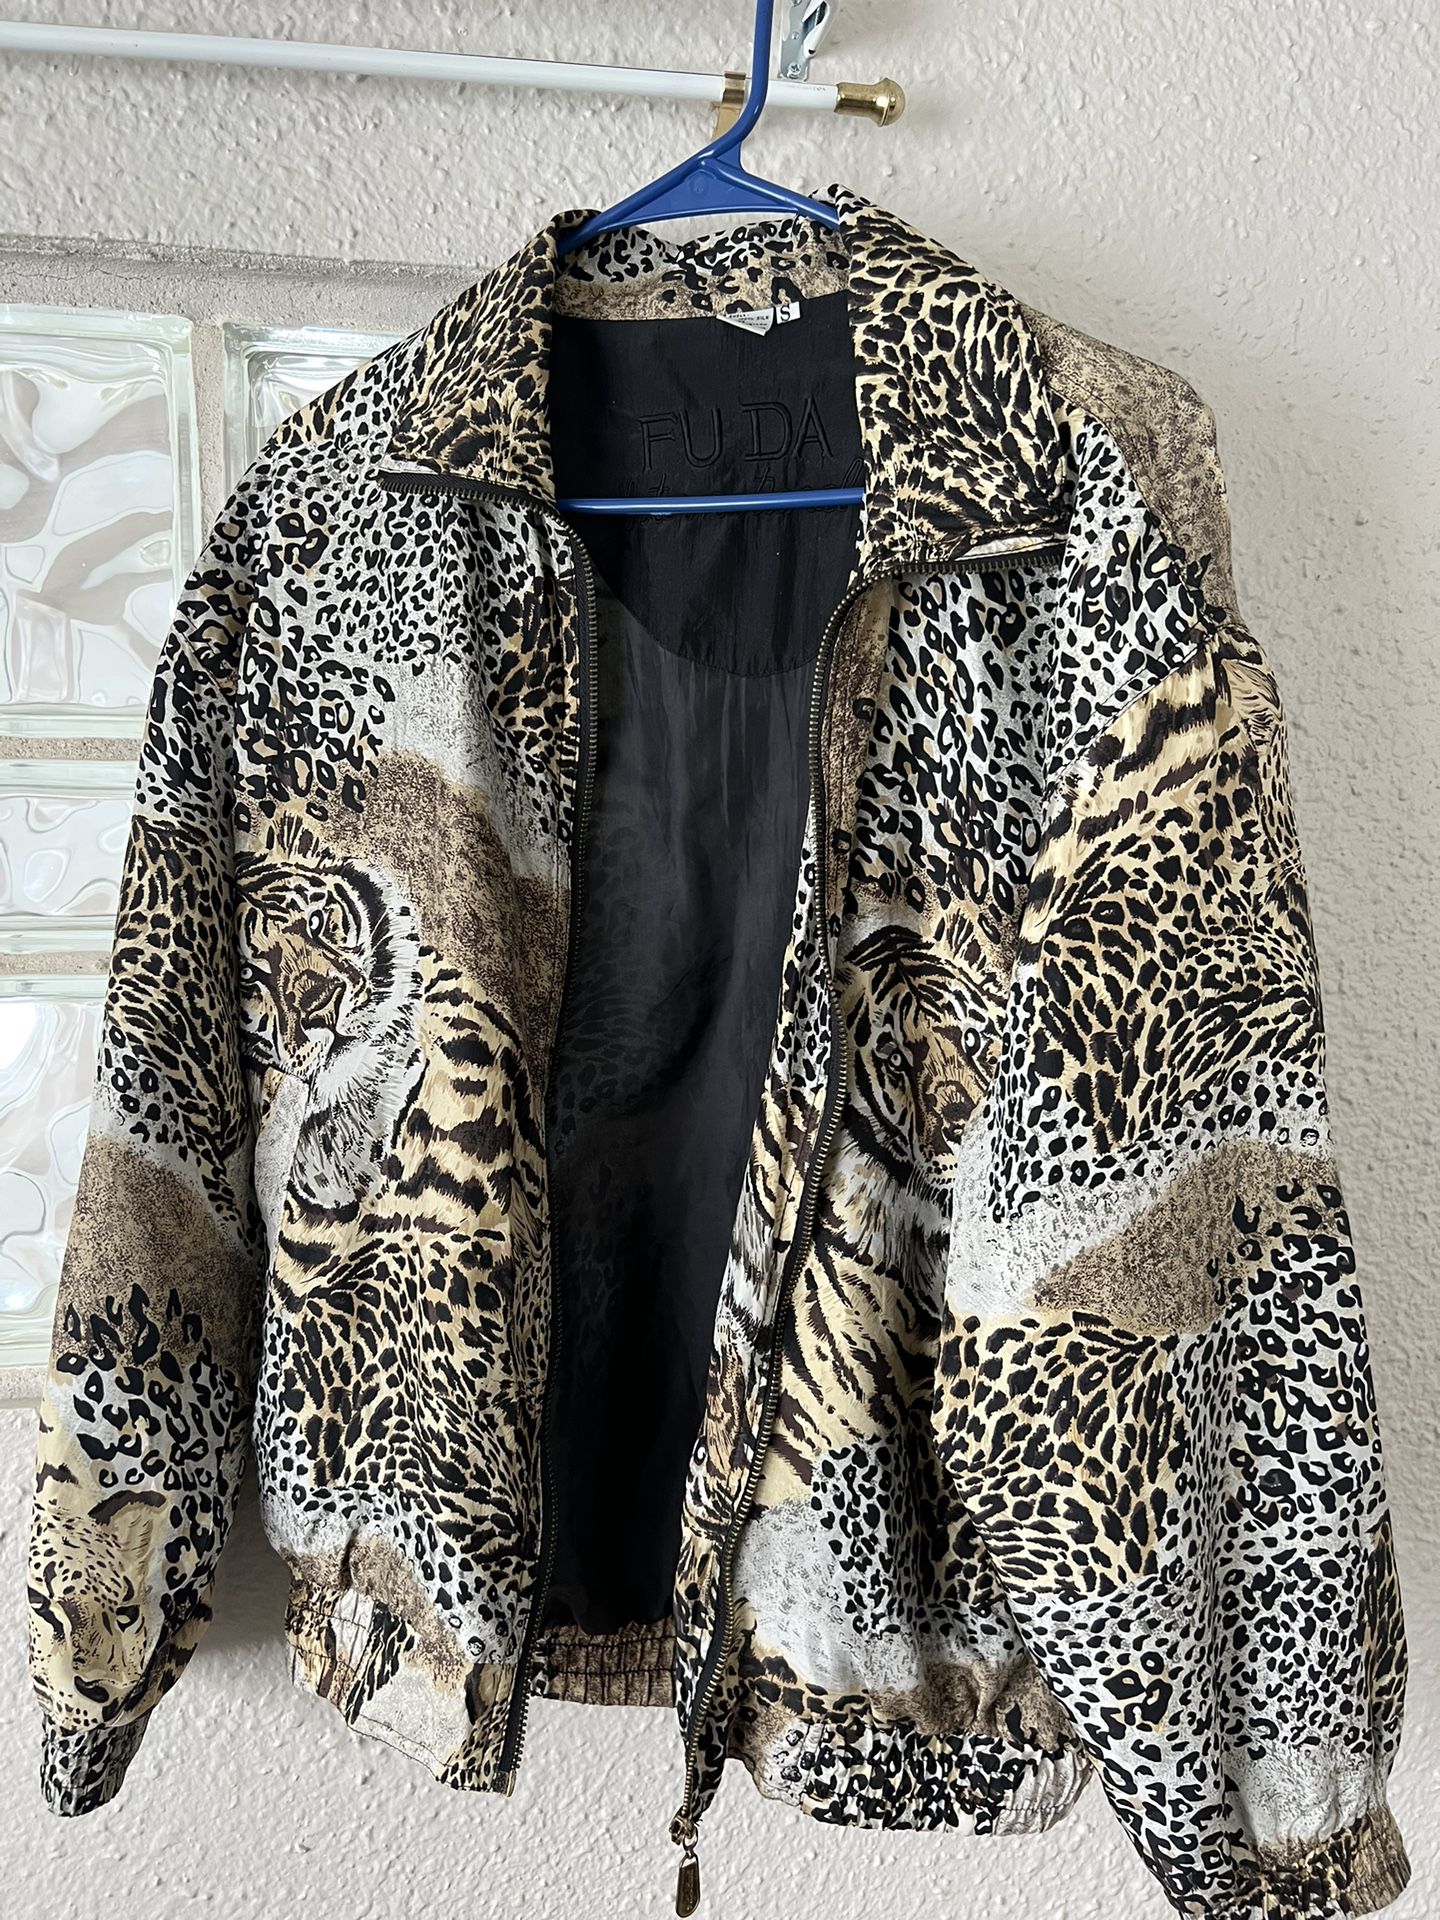 100% Silk Tiger jacket